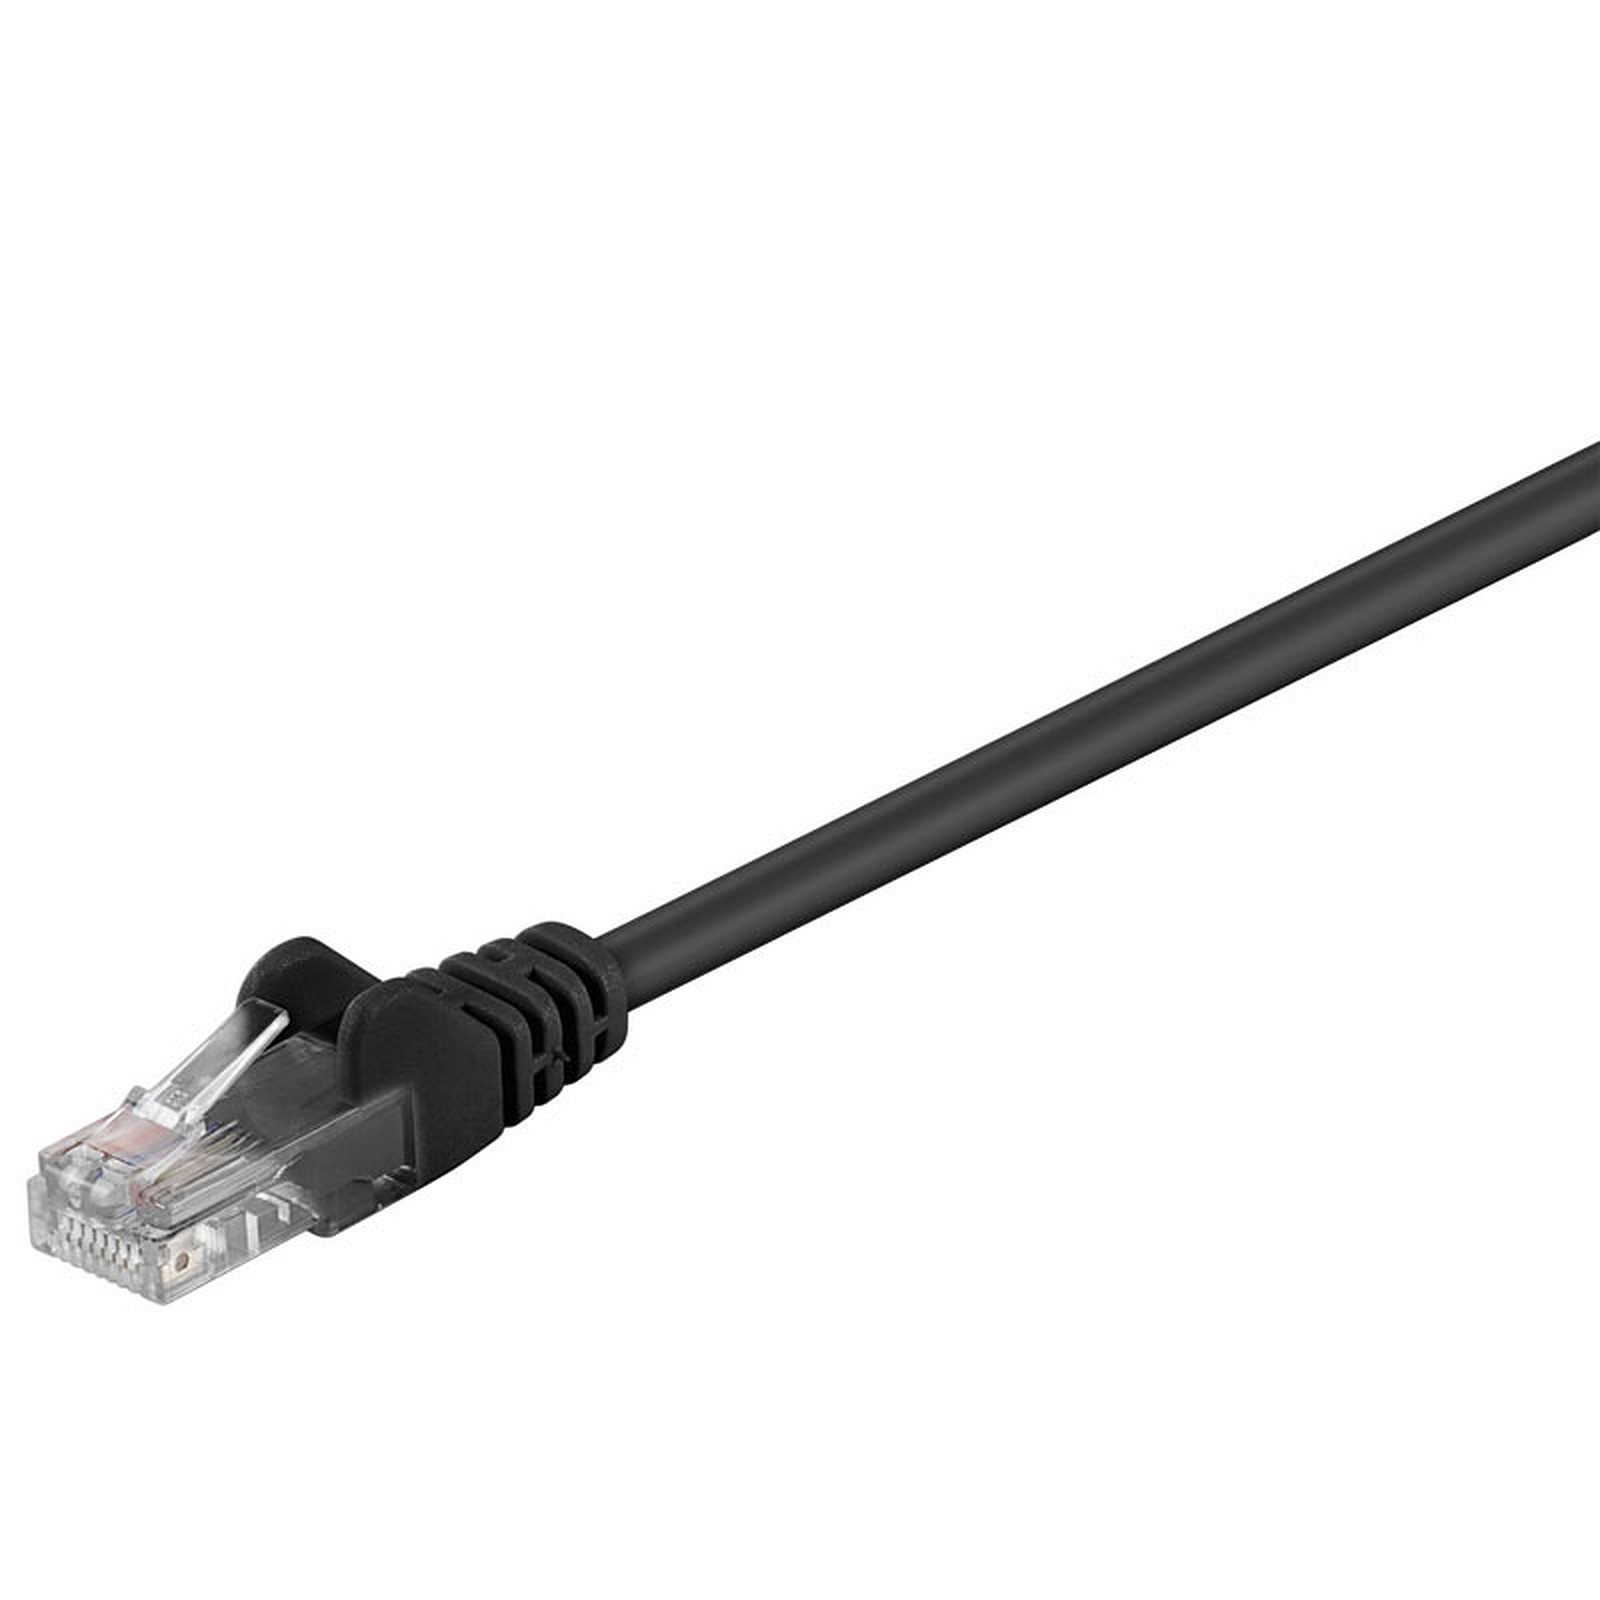 Cable RJ45 categorie 5e U/UTP 0.15 m (Noir) - Cable RJ45 Generique